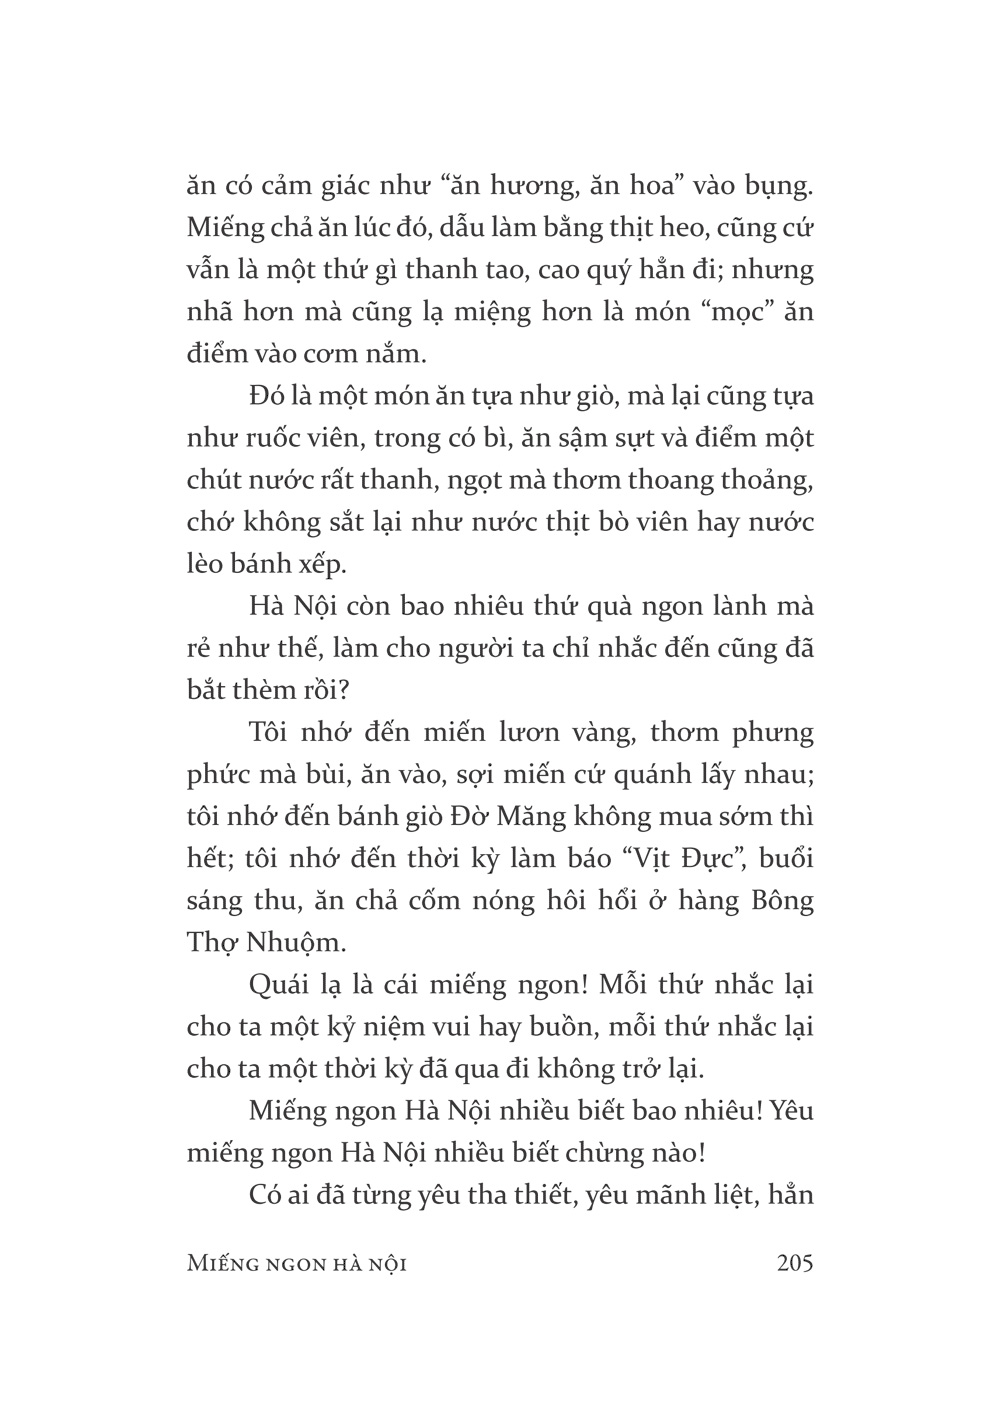 Việt Nam Danh Tác - Miếng Ngon Hà Nội PDF